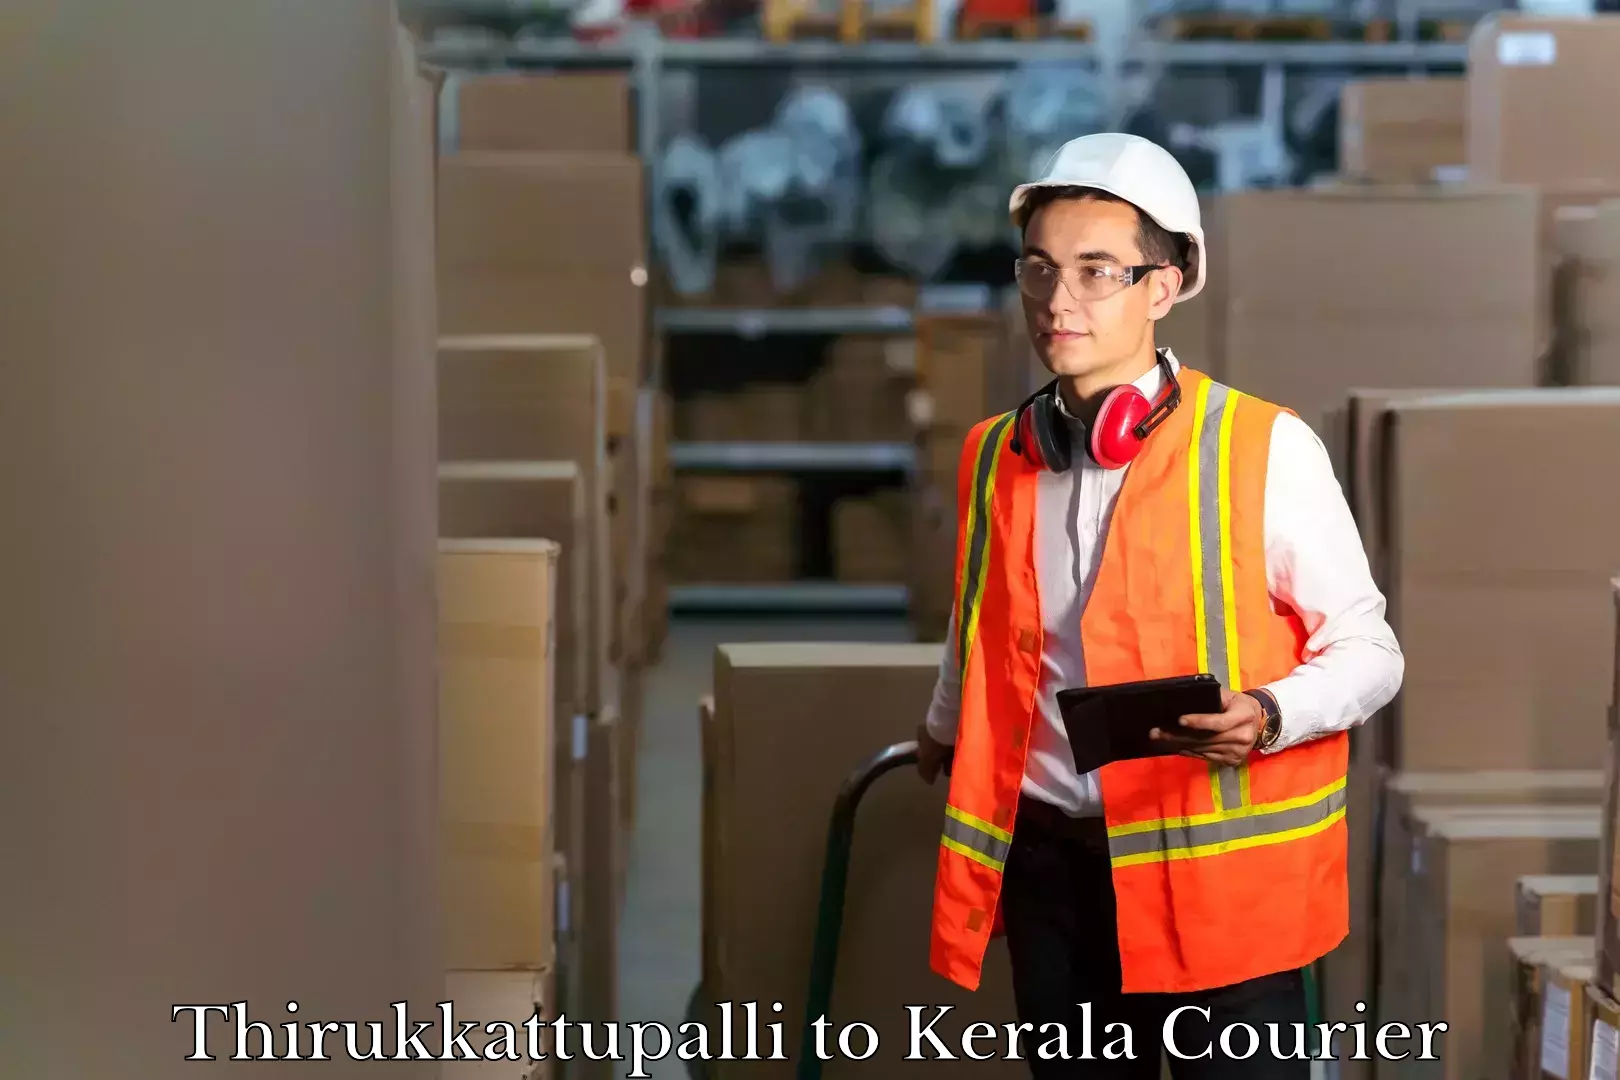 Baggage shipping rates calculator Thirukkattupalli to Kattappana